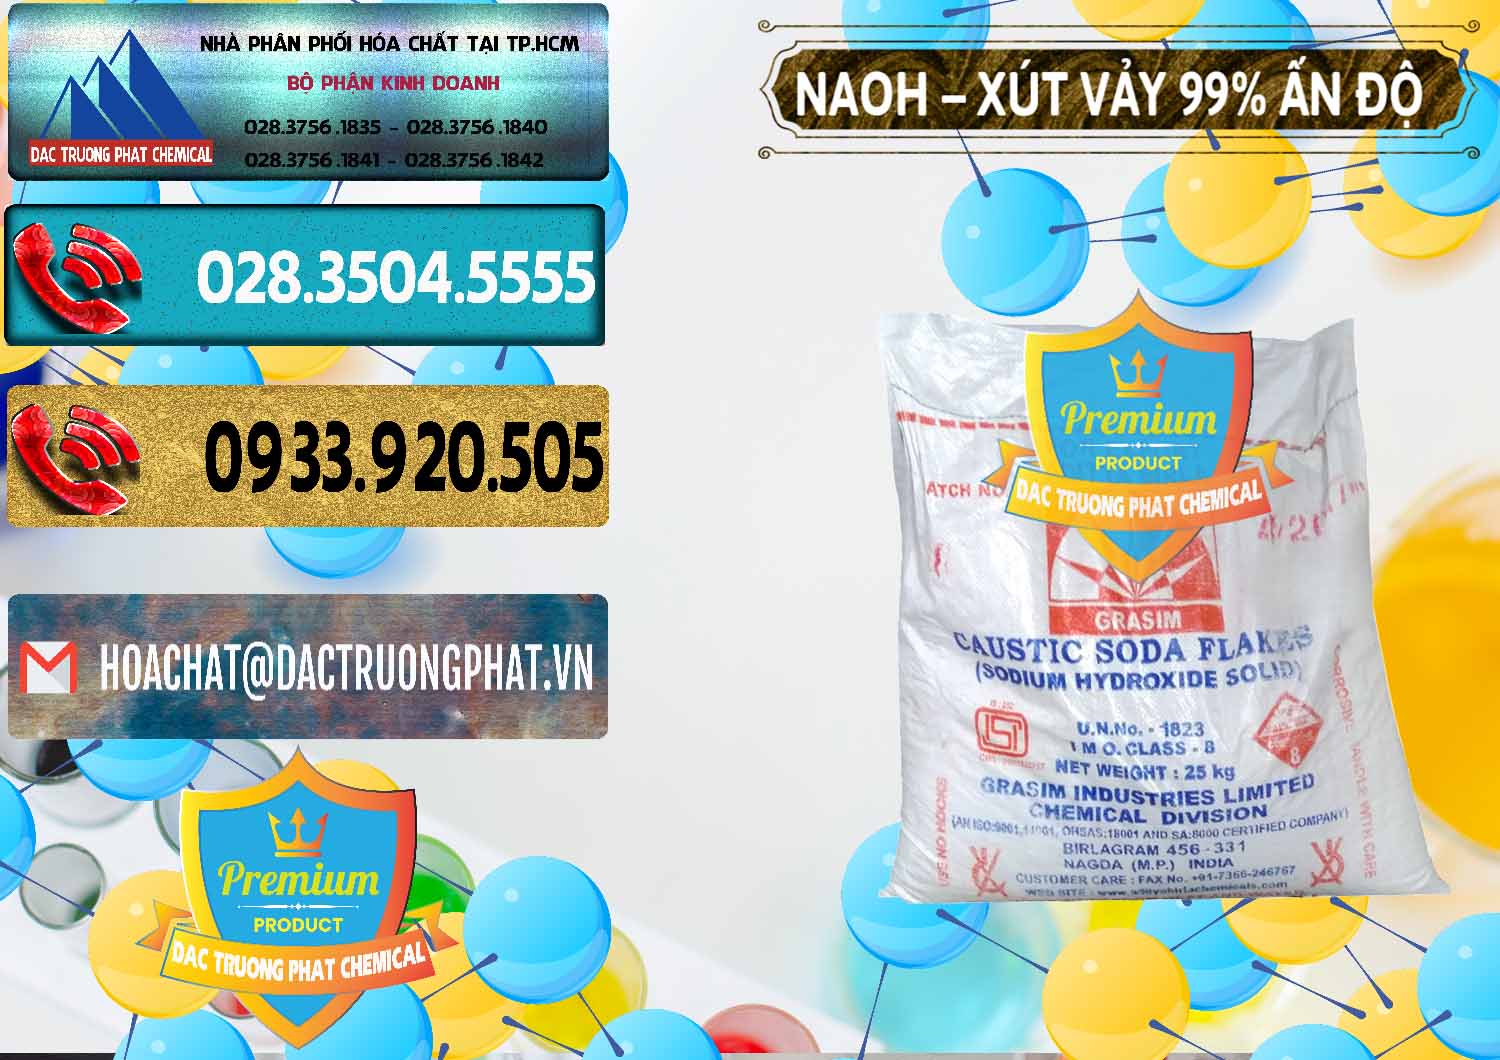 Chuyên bán và cung ứng Xút Vảy - NaOH Vảy 99% Aditya Birla Grasim Ấn Độ India - 0171 - Nơi chuyên bán và cung cấp hóa chất tại TP.HCM - hoachatdetnhuom.com